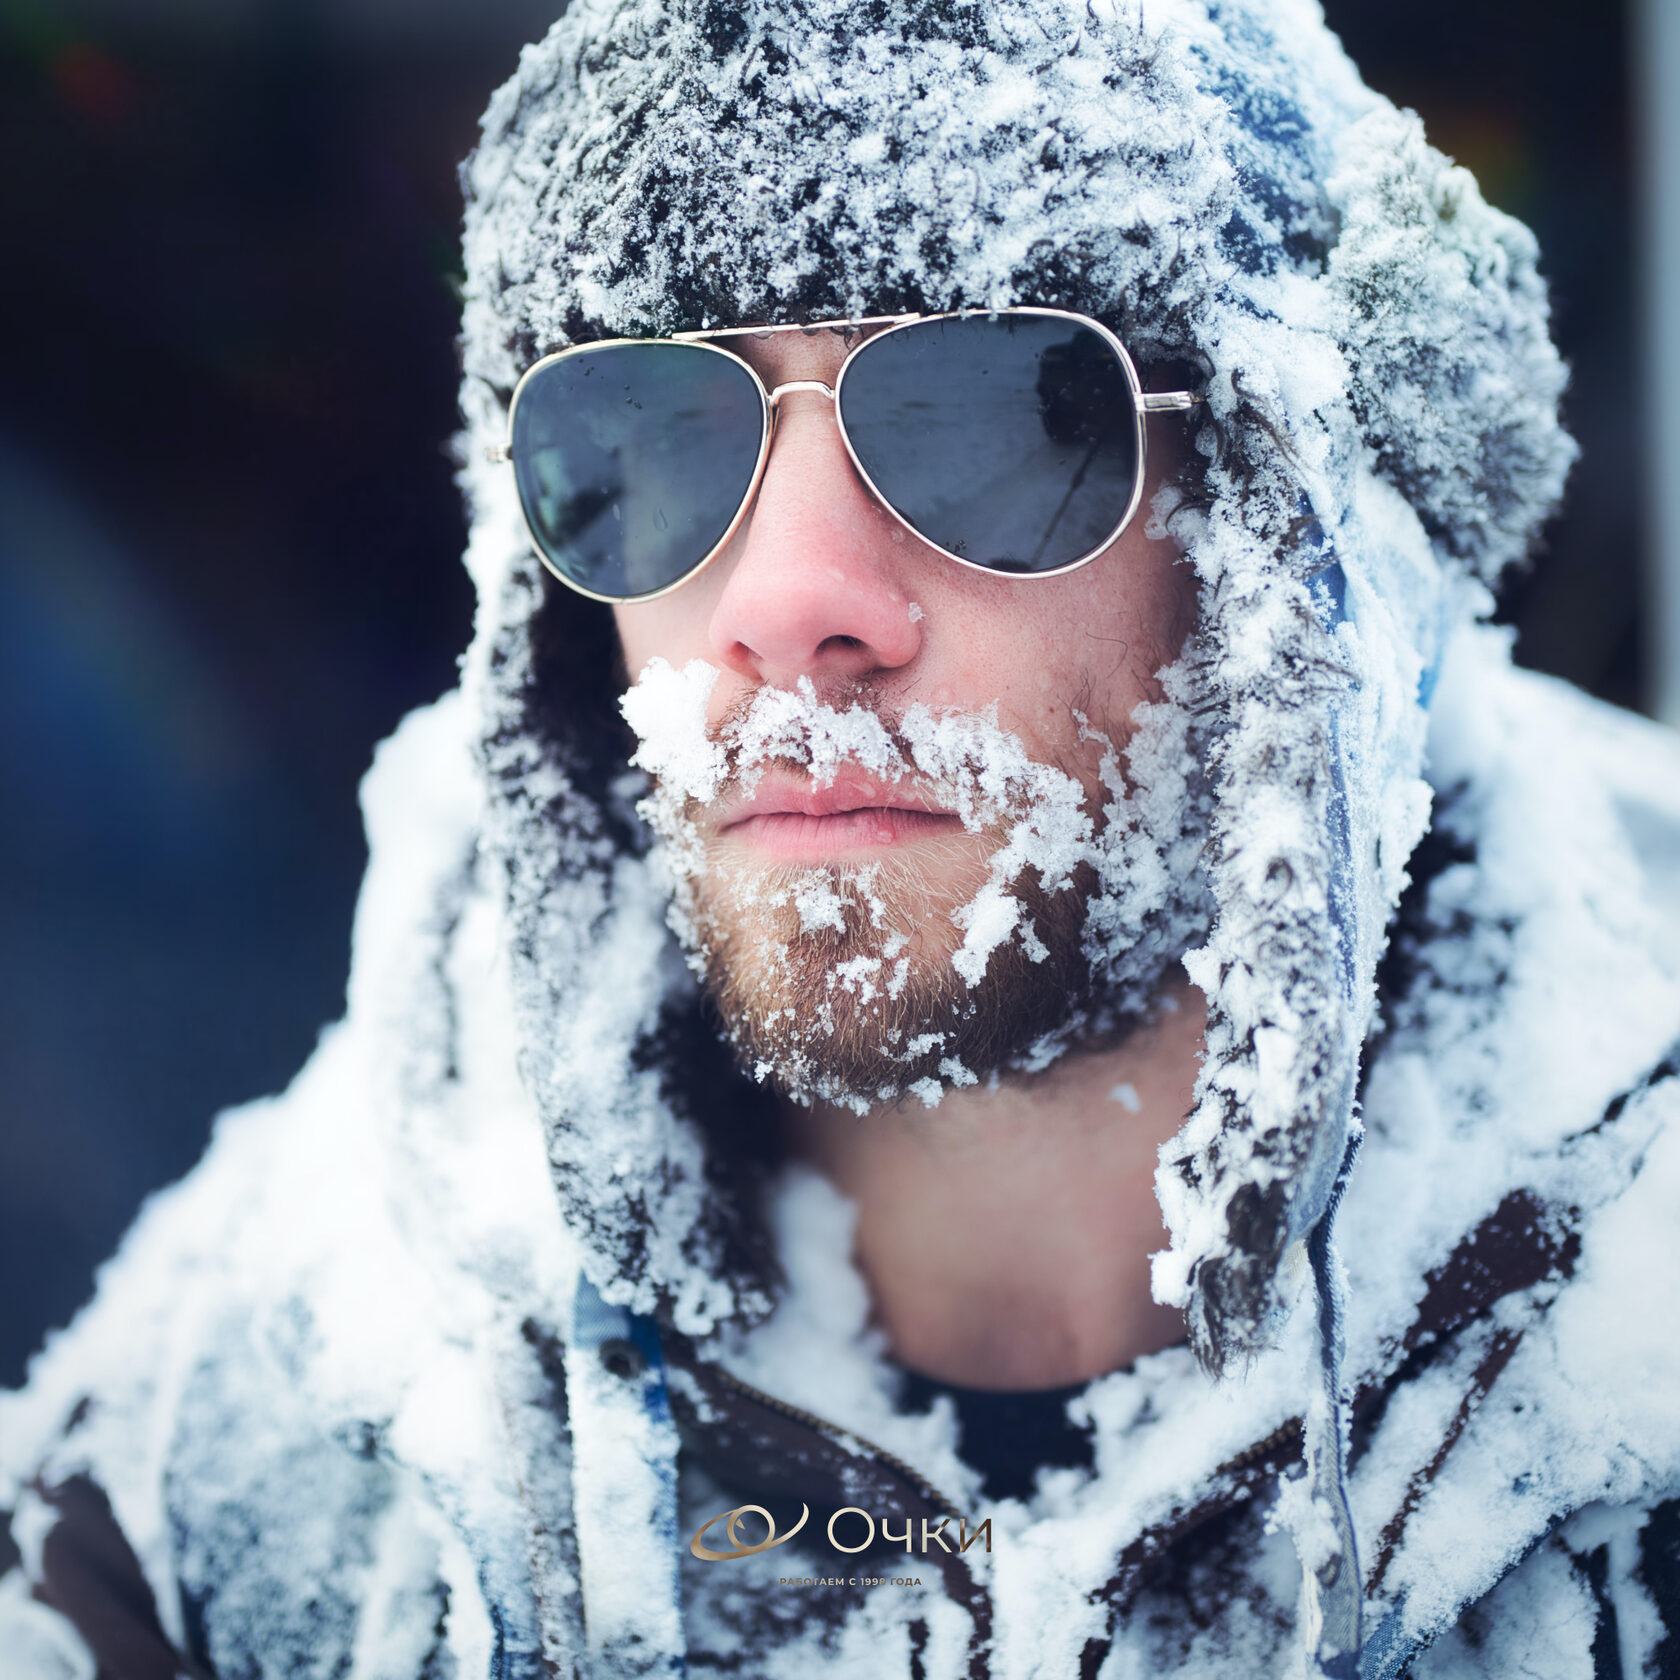 Wet and cold. Зима в очках с бородой. Солнцезащитные очки зимой. Переохлаждение.